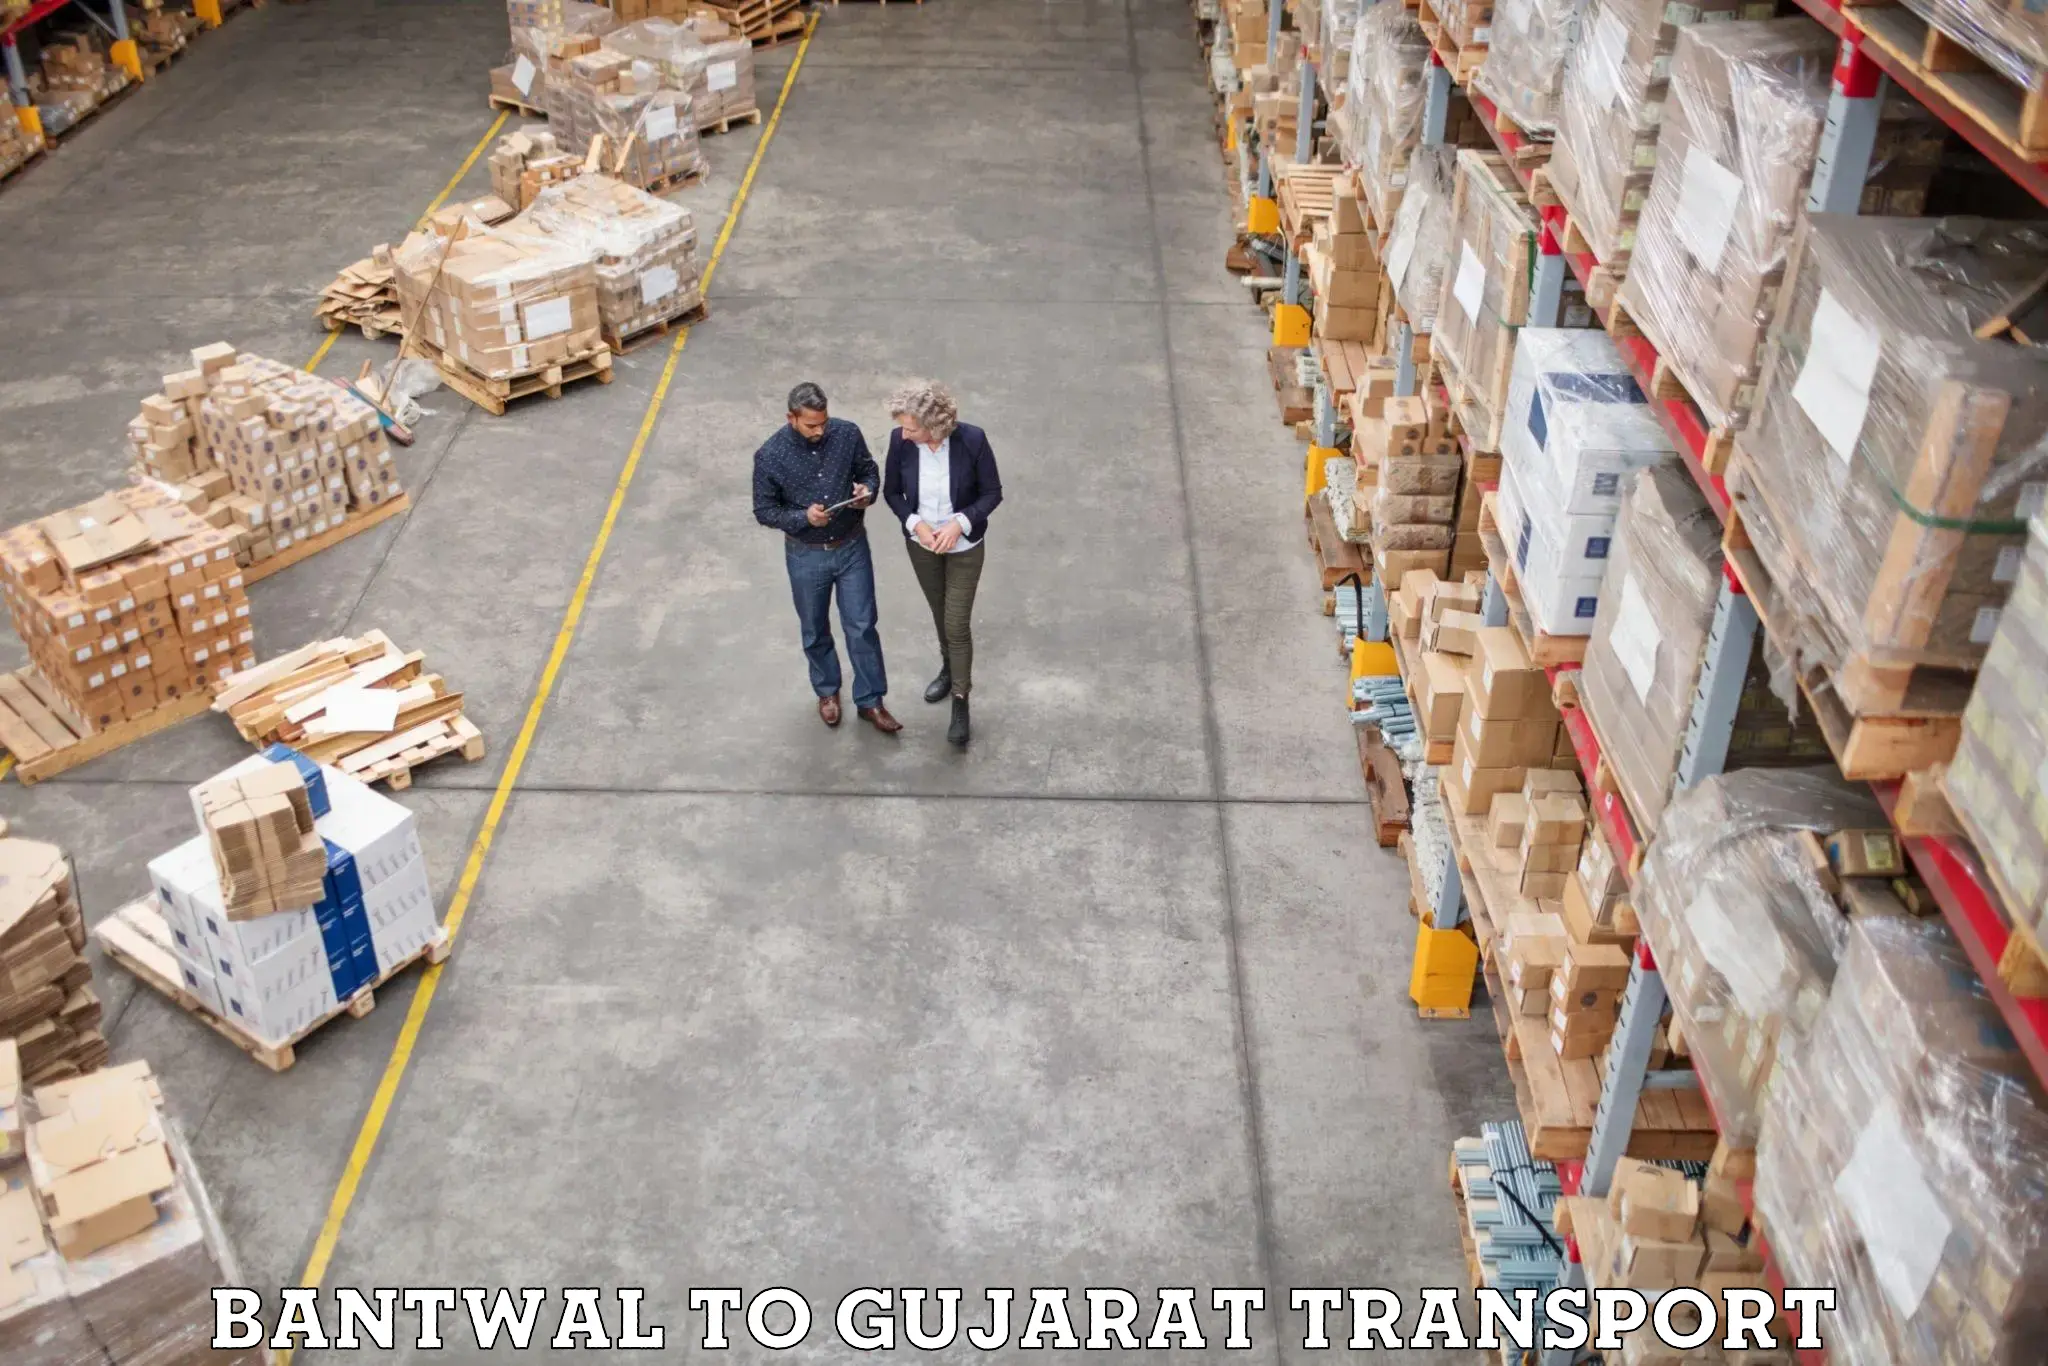 Commercial transport service Bantwal to Sabarkantha